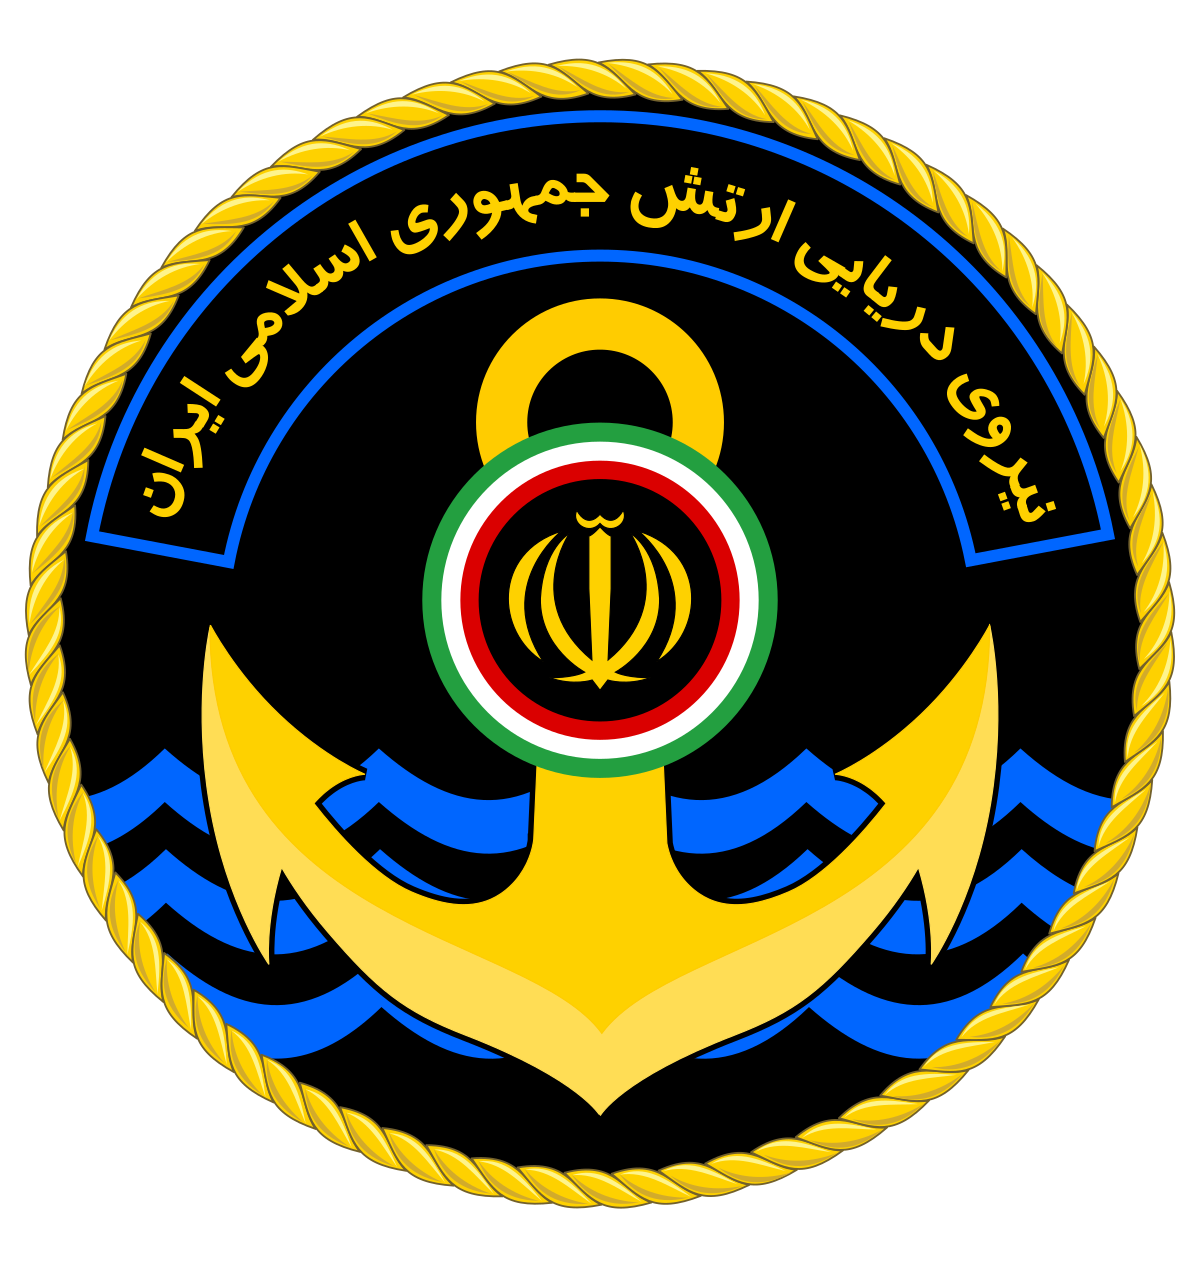 بیانیه گرامیداشت روز نیروی دریایی ارتش جمهوری اسلامی ایران